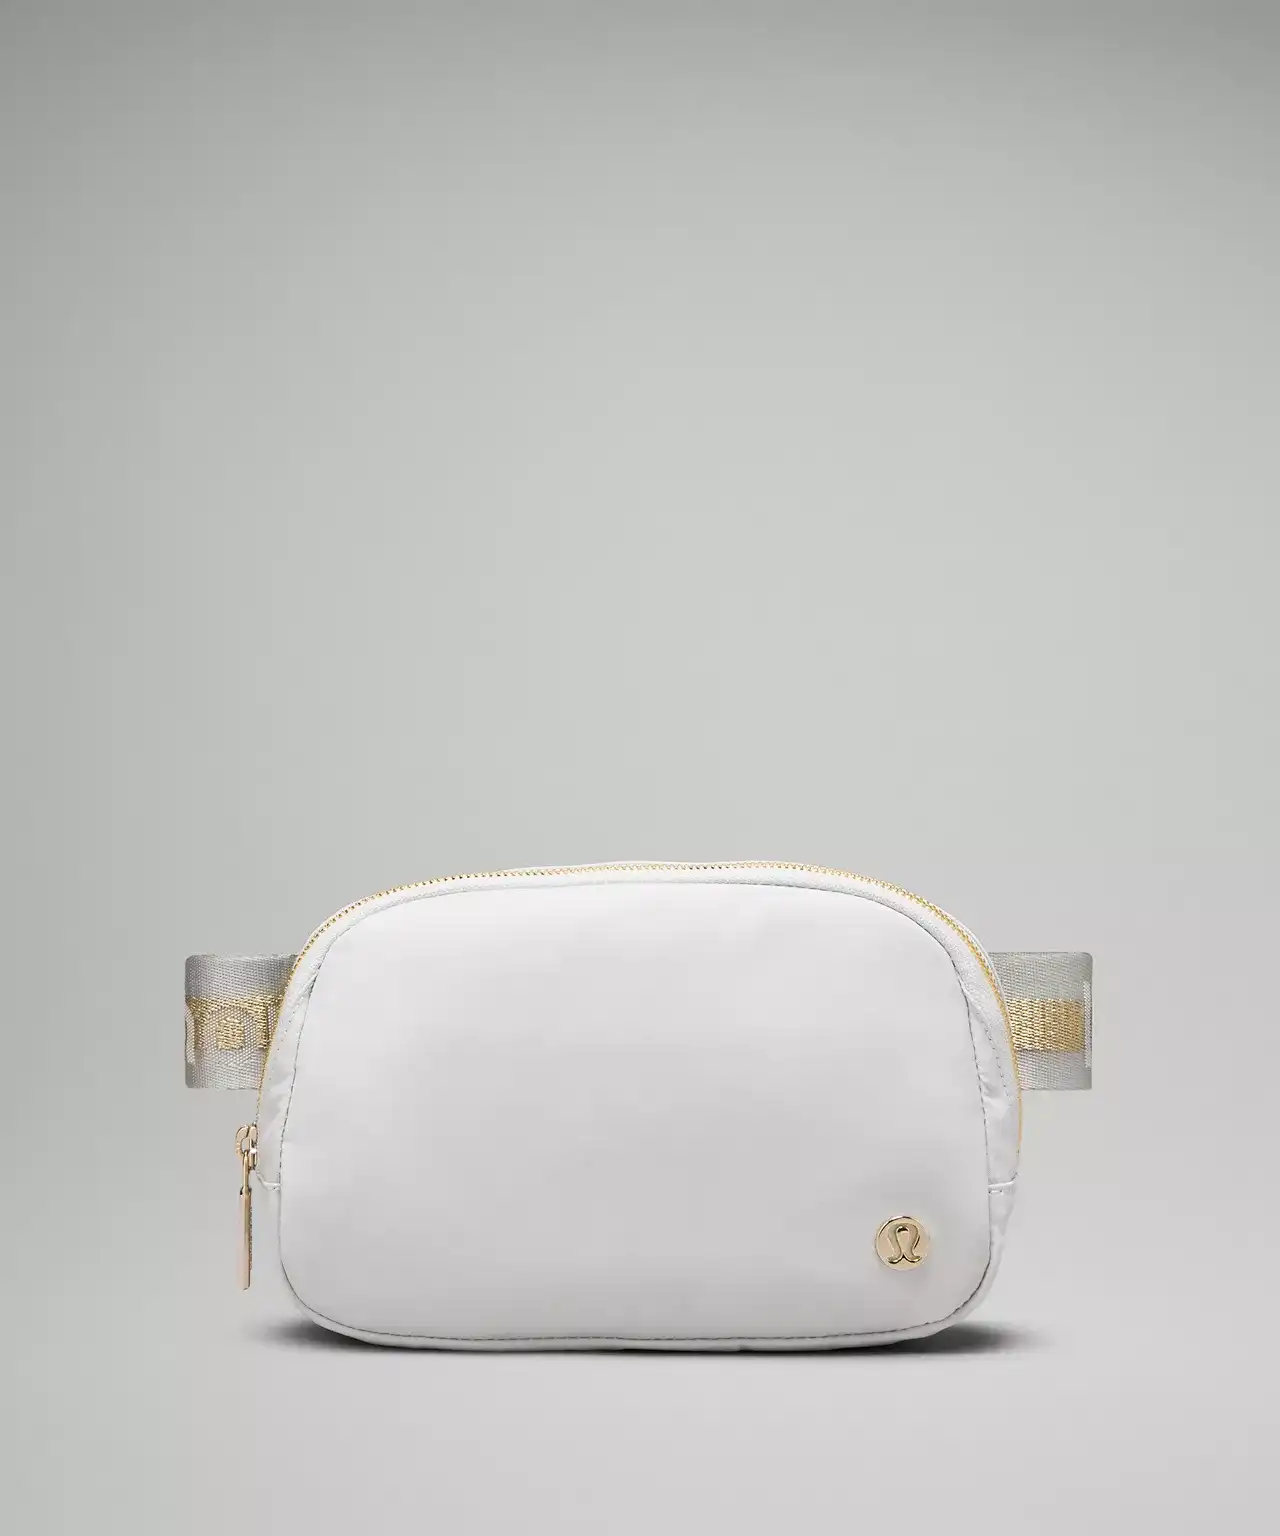 luluelmon white gold belt bag